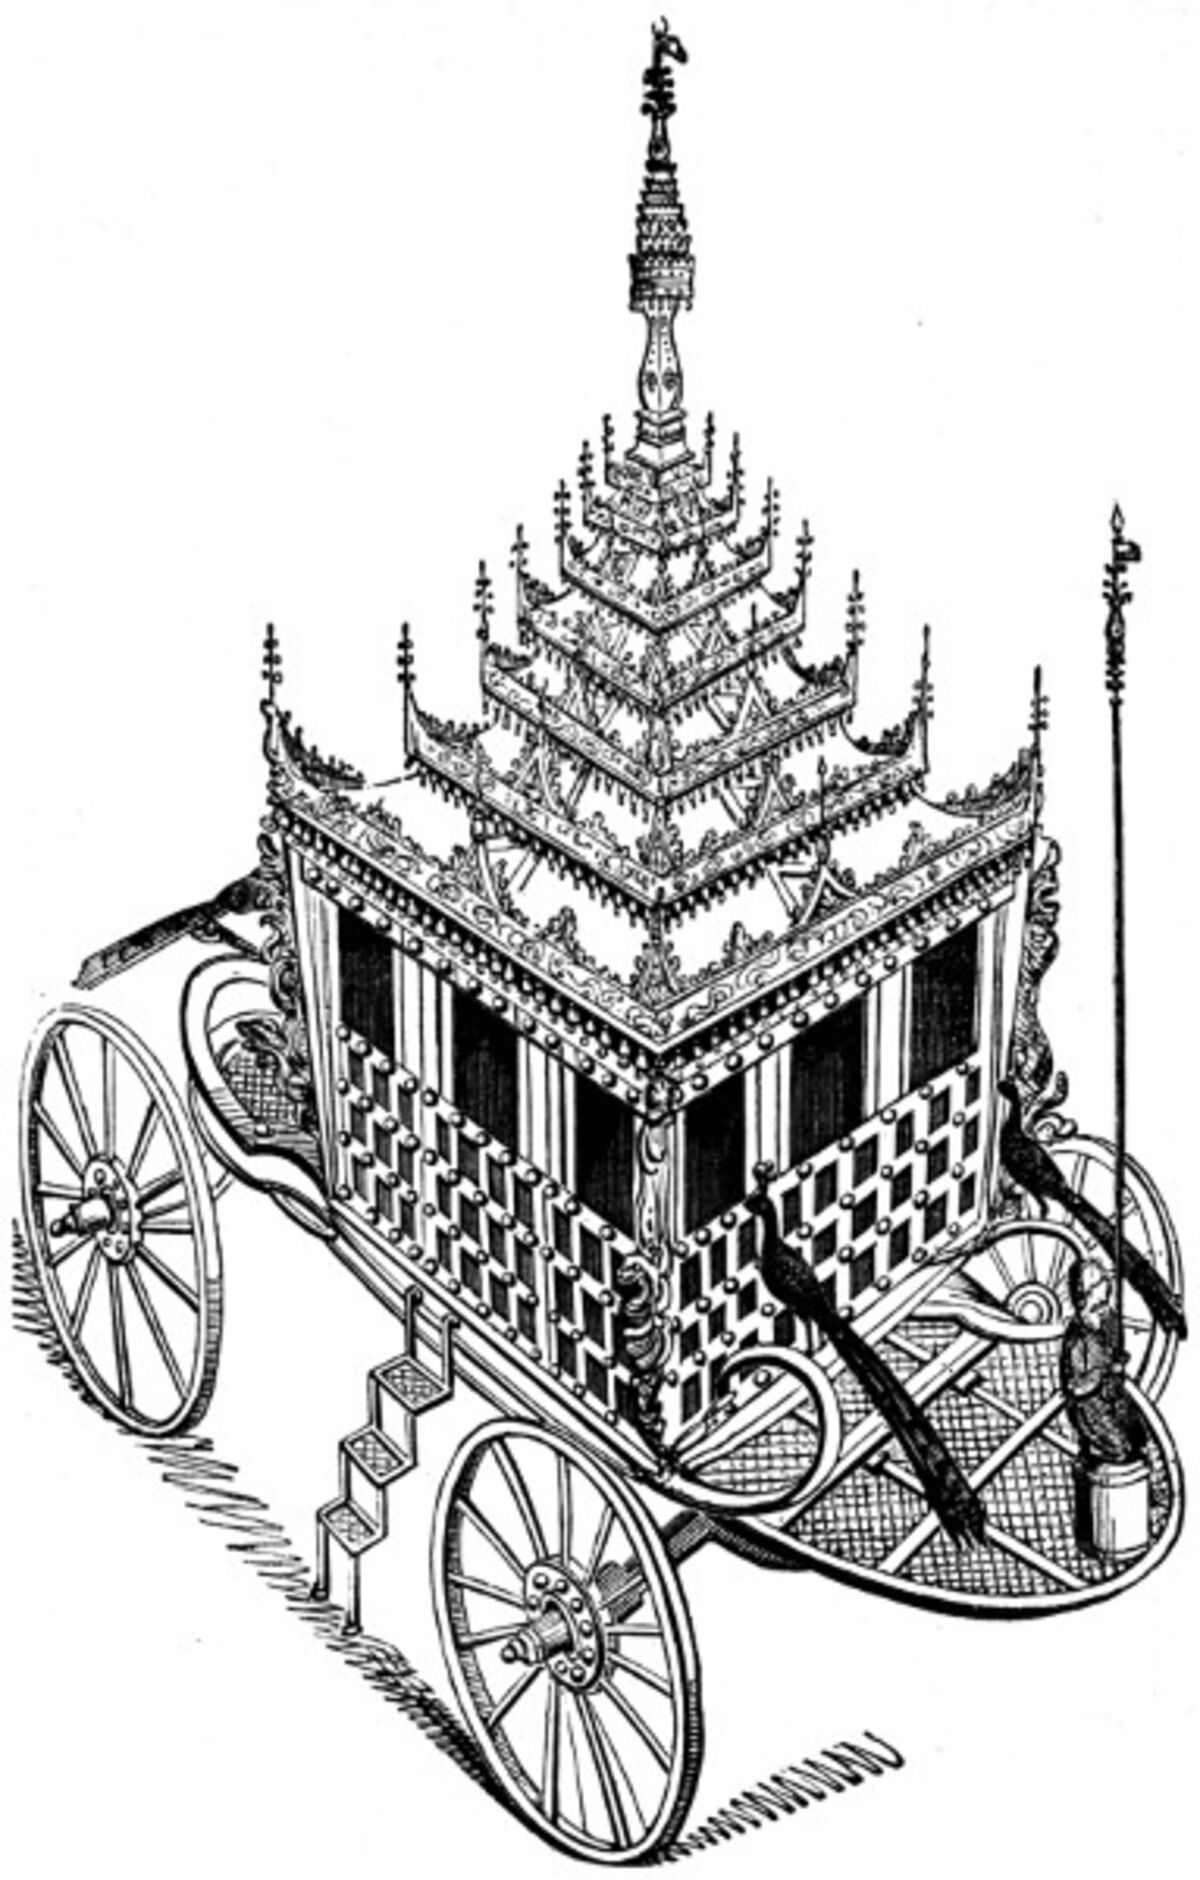 GFD 3/124: Staatswagen des Birmanischen Kaisers Bagyidaw (Buchillustration, um 1825)